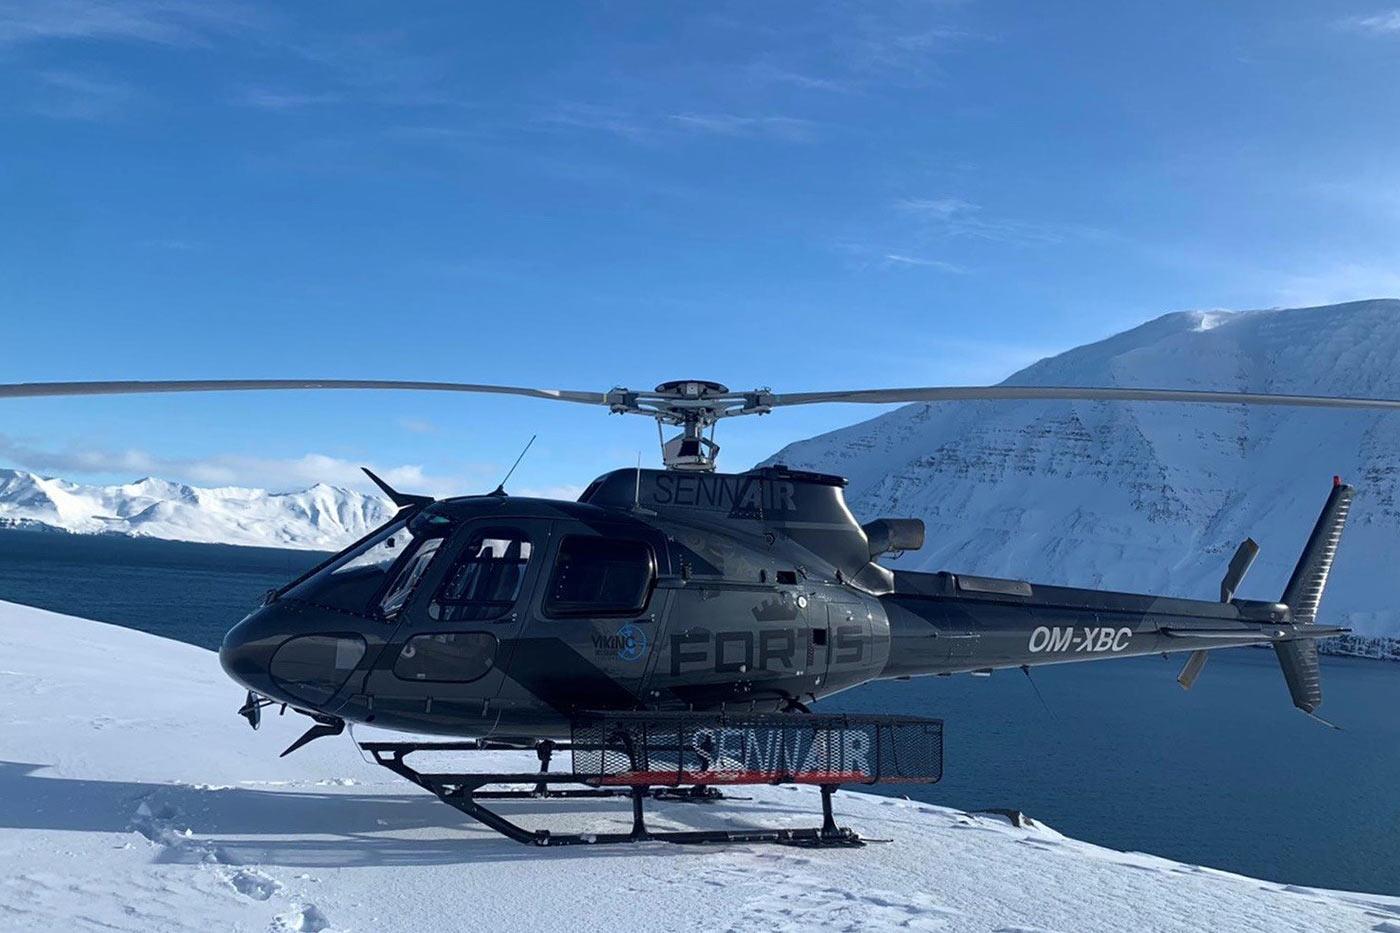 sennair helicopter alps